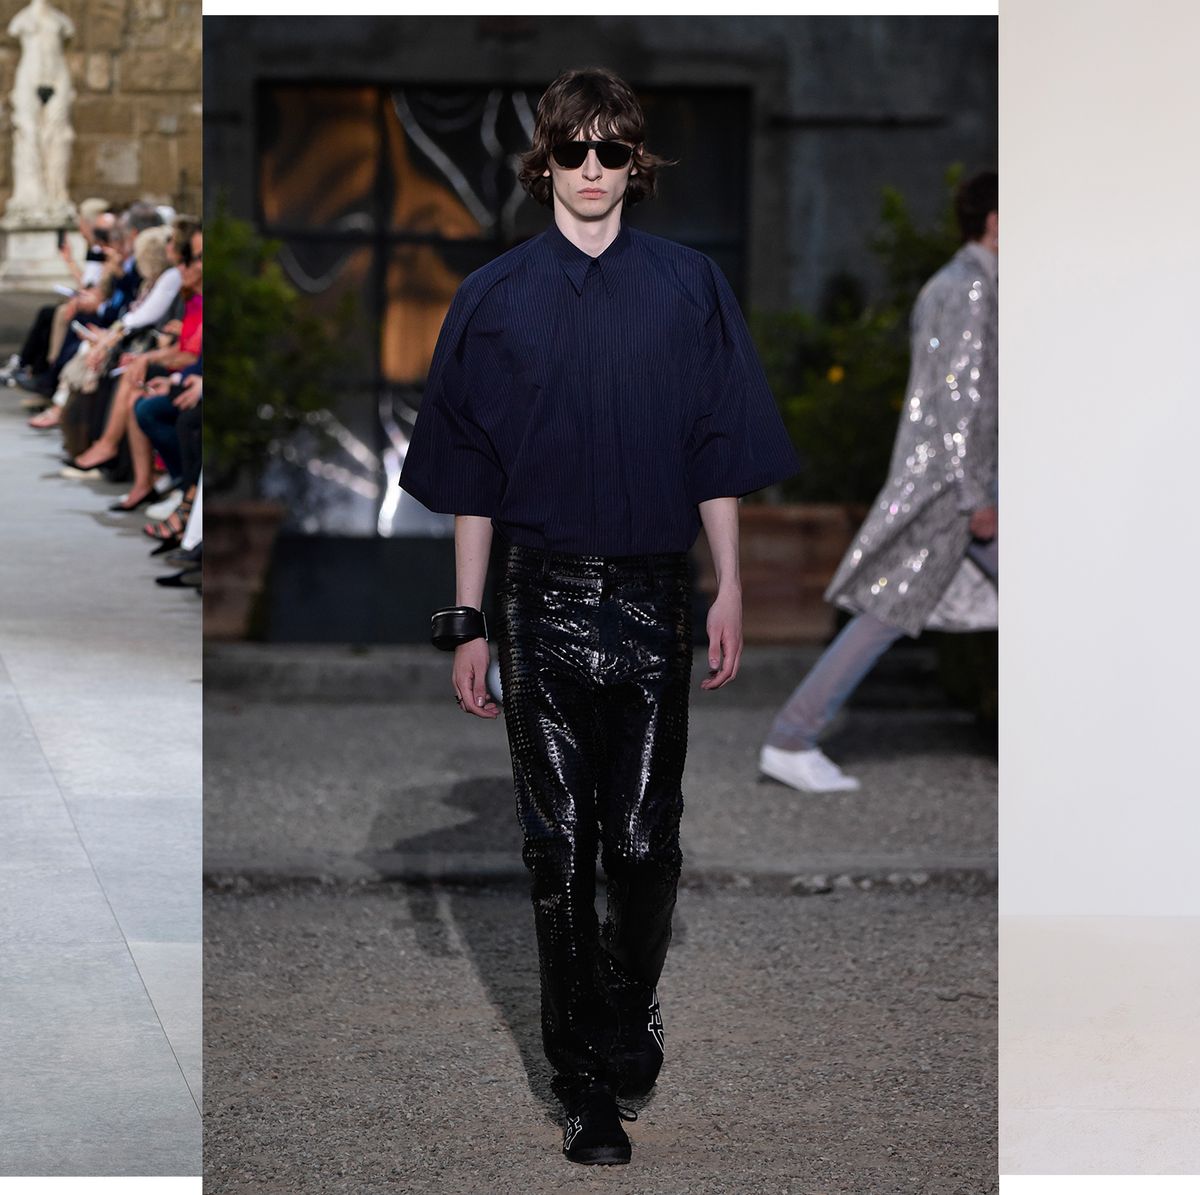 Las tendencias en ropa de hombre la primavera 2020 - La pasarela de Pitti 96 Florencia